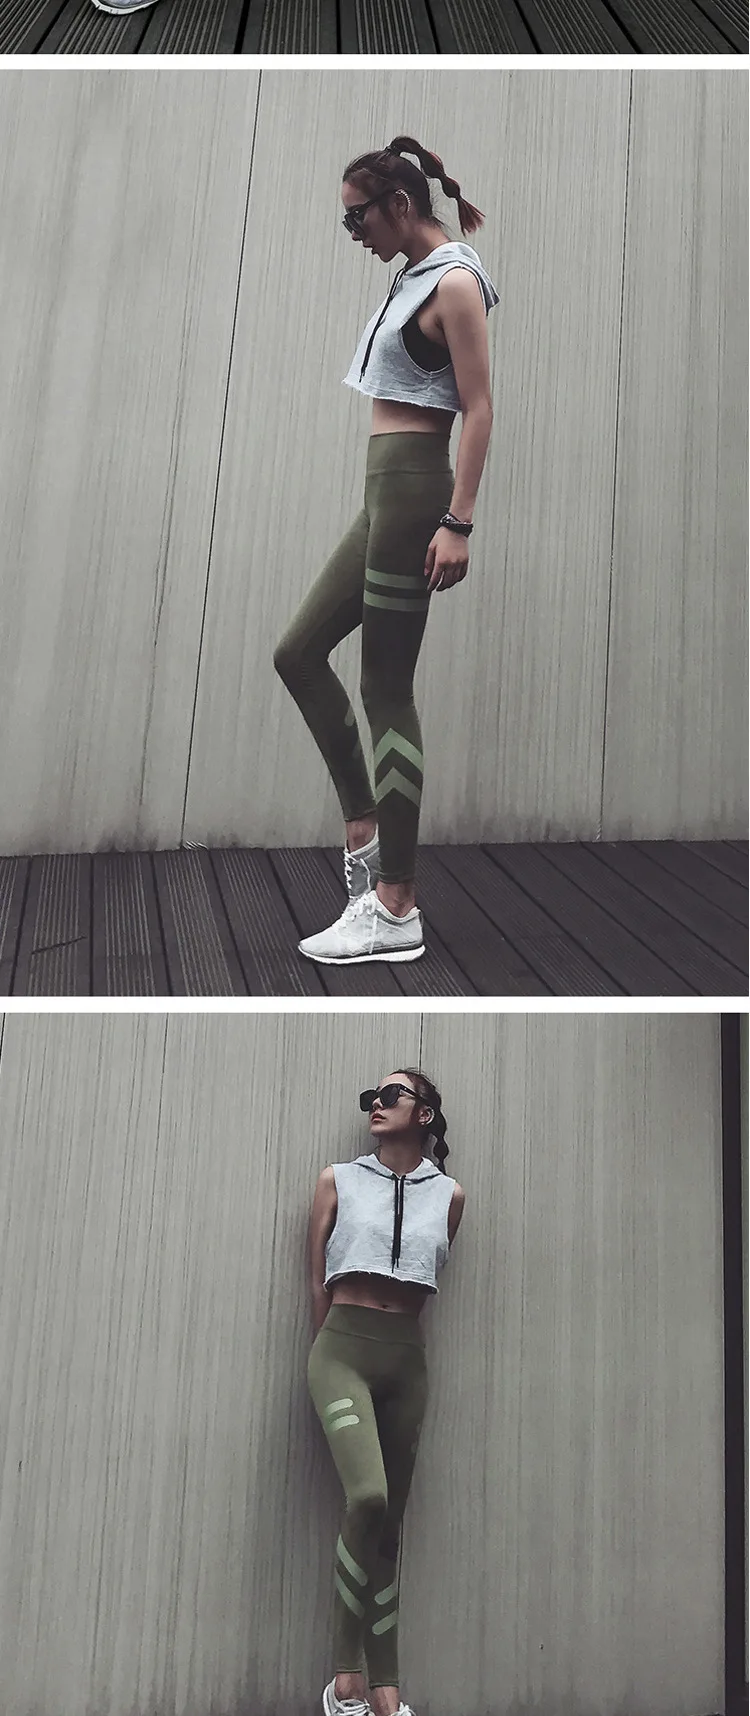 Персиковые утягивающие штаны для фитнеса, женские эластичные быстросохнущие обтягивающие спортивные Леггинсы для бега, верхняя одежда с